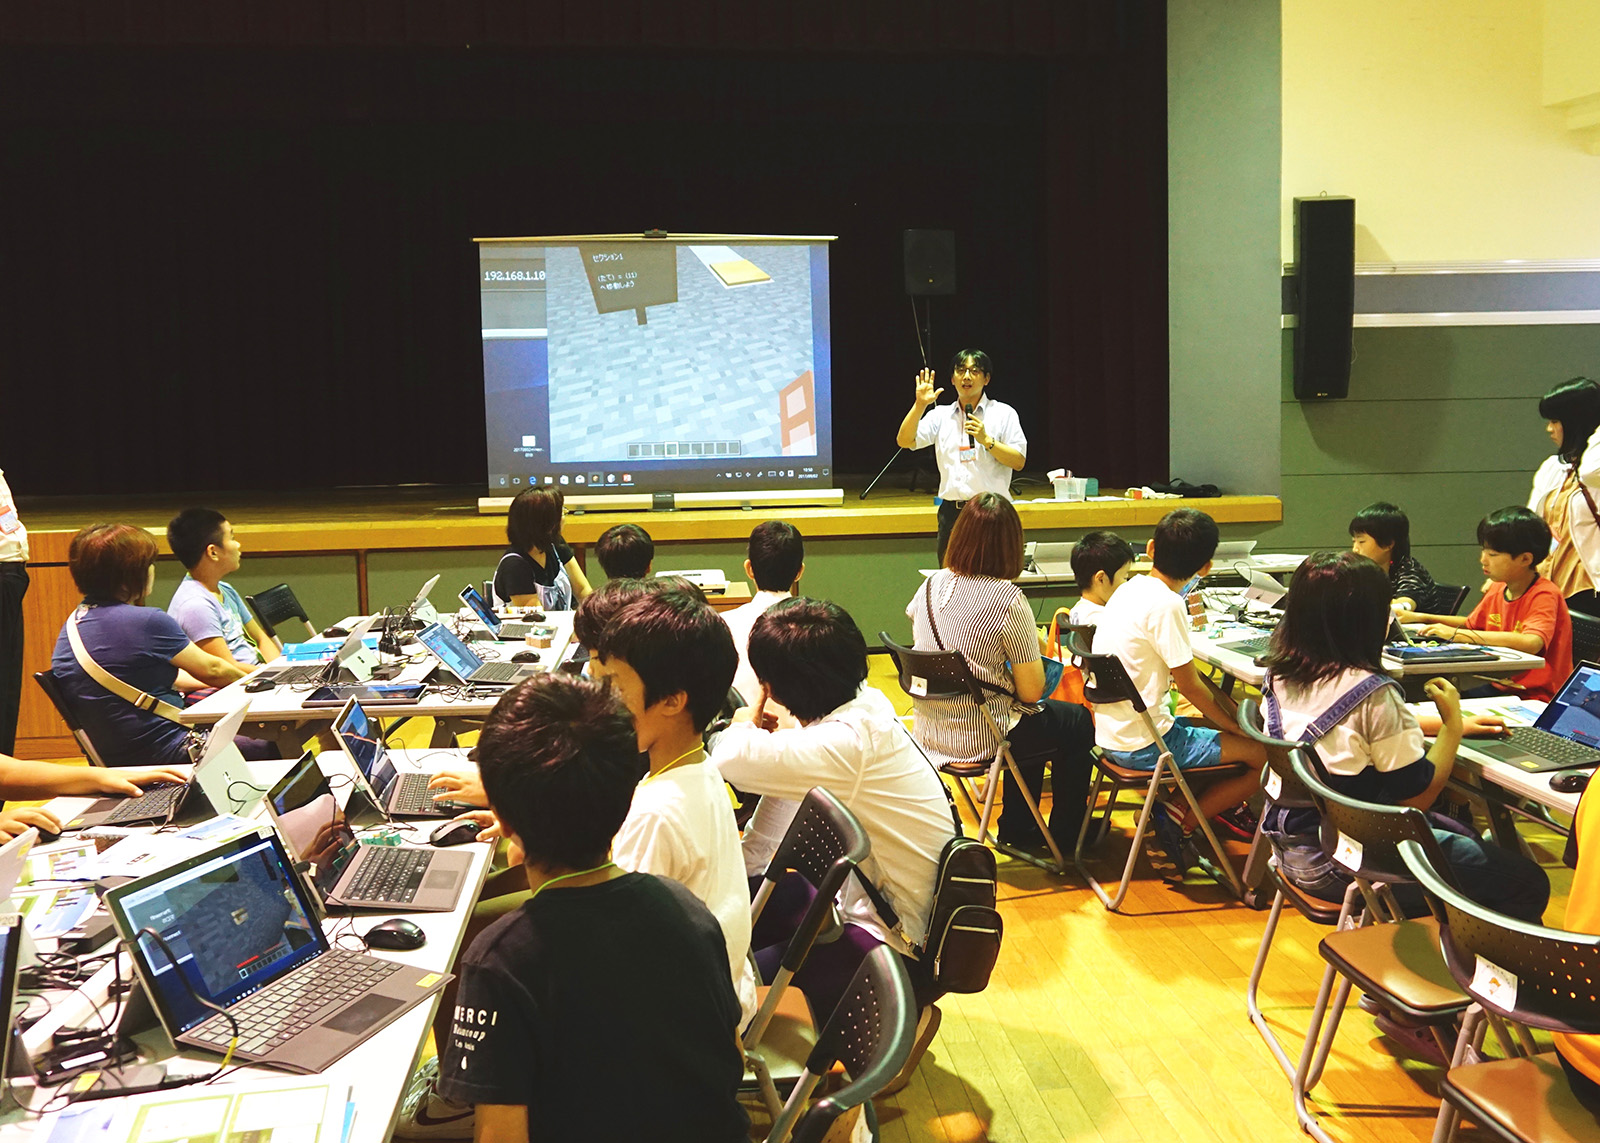 ものづくりゲーム Minecraft を学校の授業で 挑戦する教育者たち プログラミングや論理回路 教員研修などマインクラフトの教育実践を紹介 Watch Headline